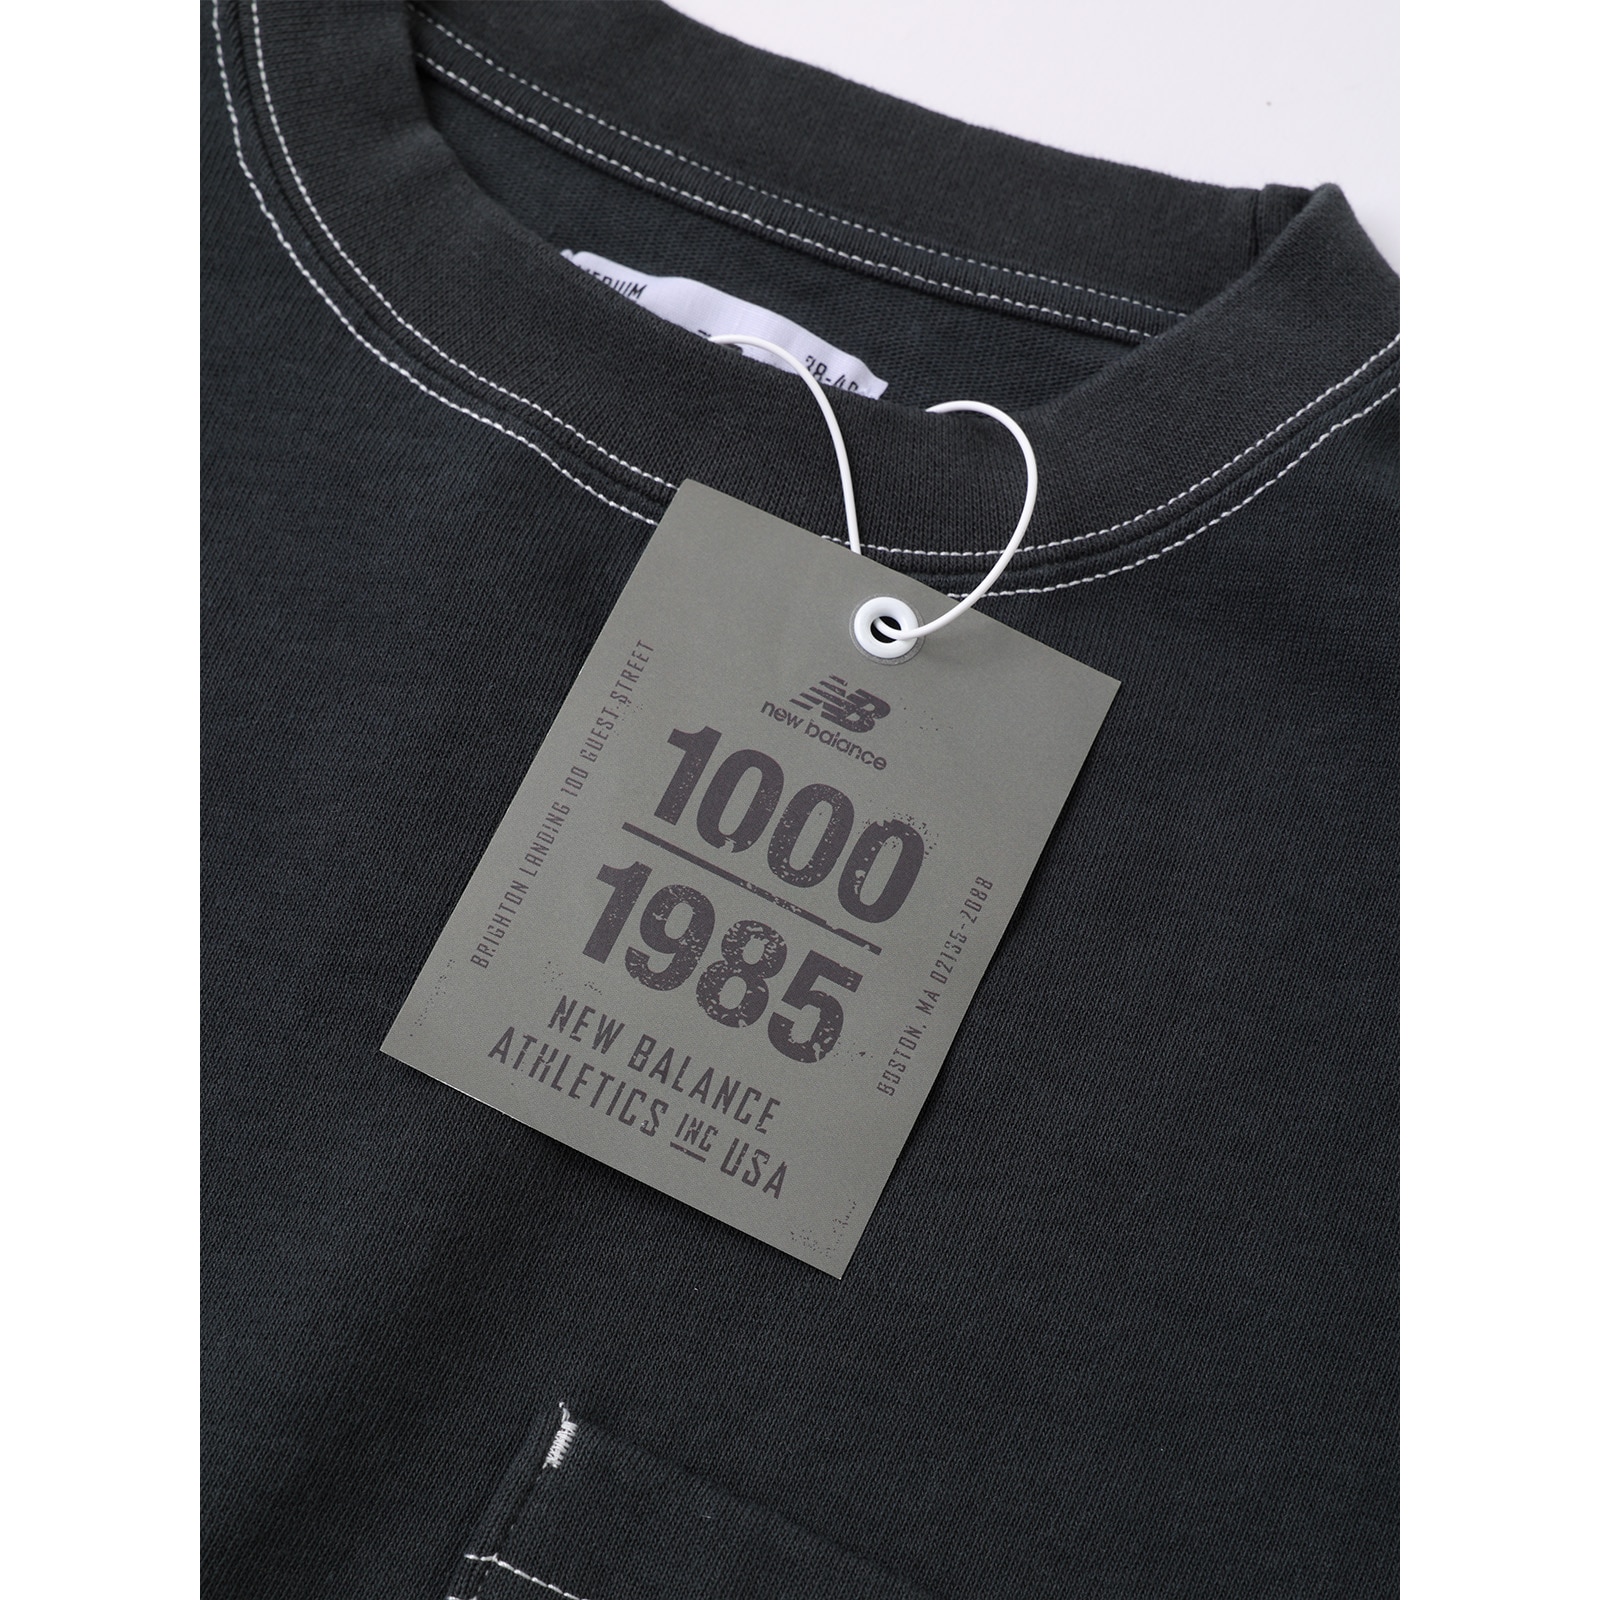 1000 Long Sleeve T-Shirt Regular Fit